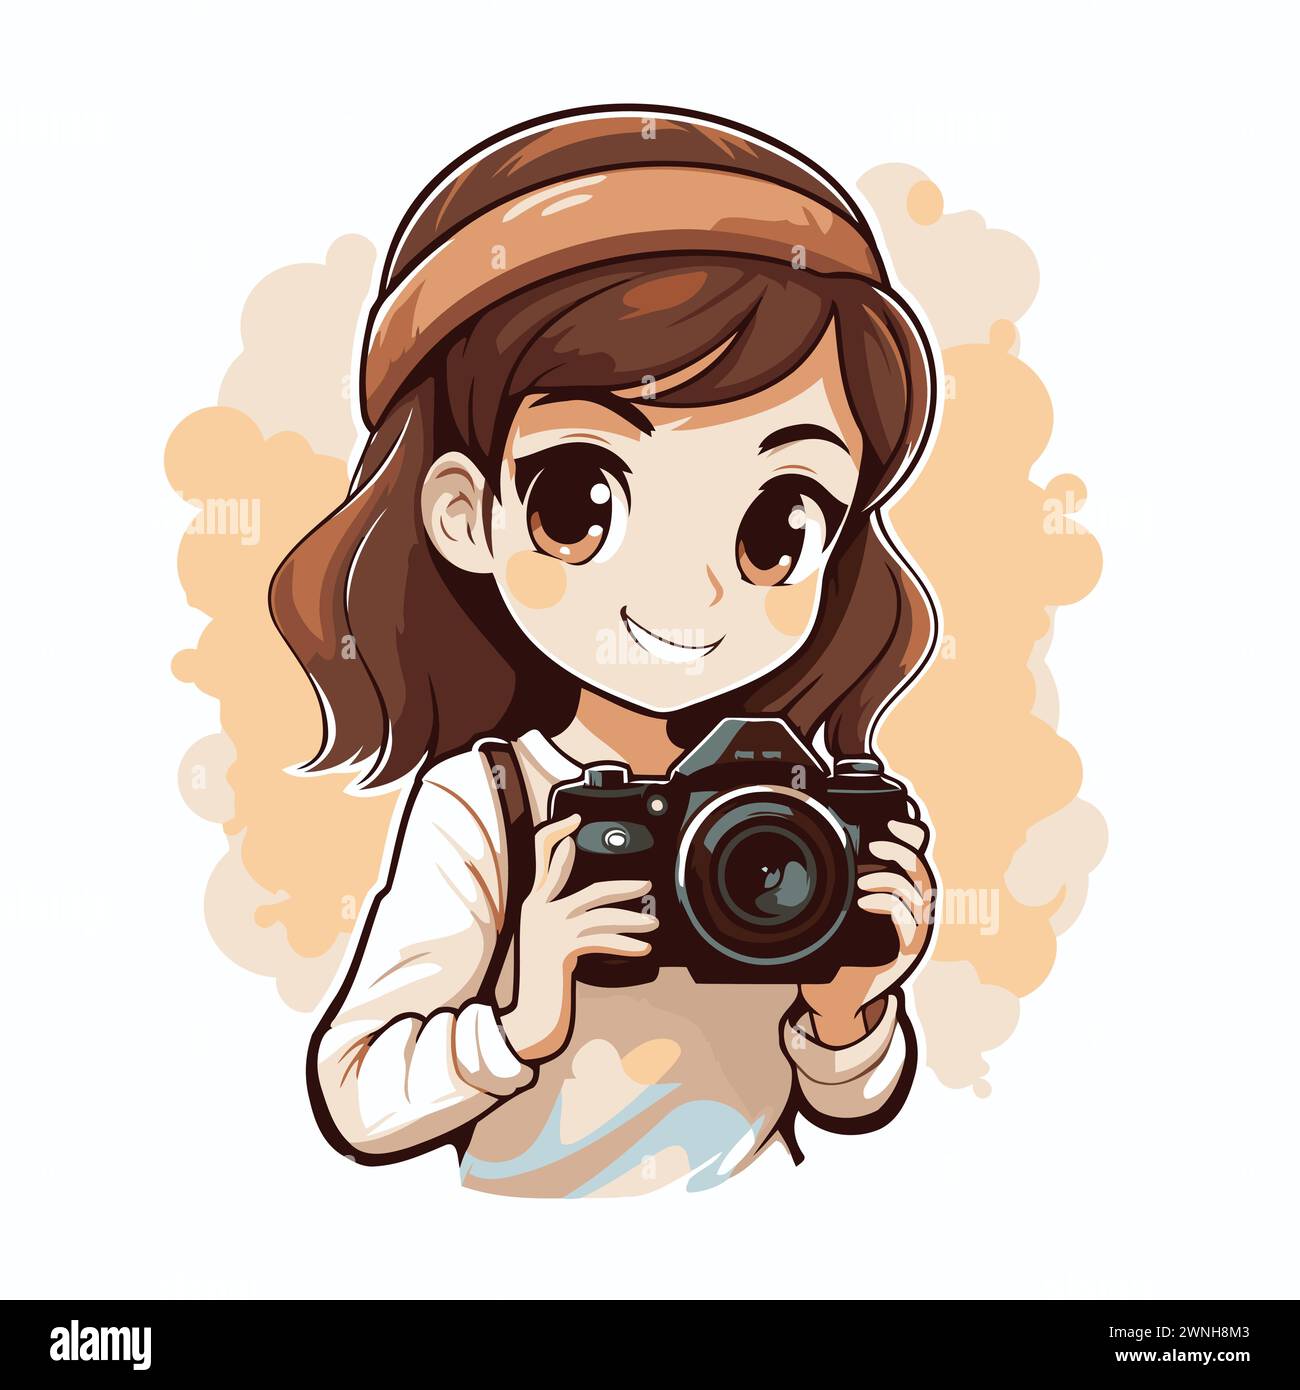 Süßes kleines Mädchen, das eine Kamera hält und lächelt. Vektorabbildung. Stock Vektor